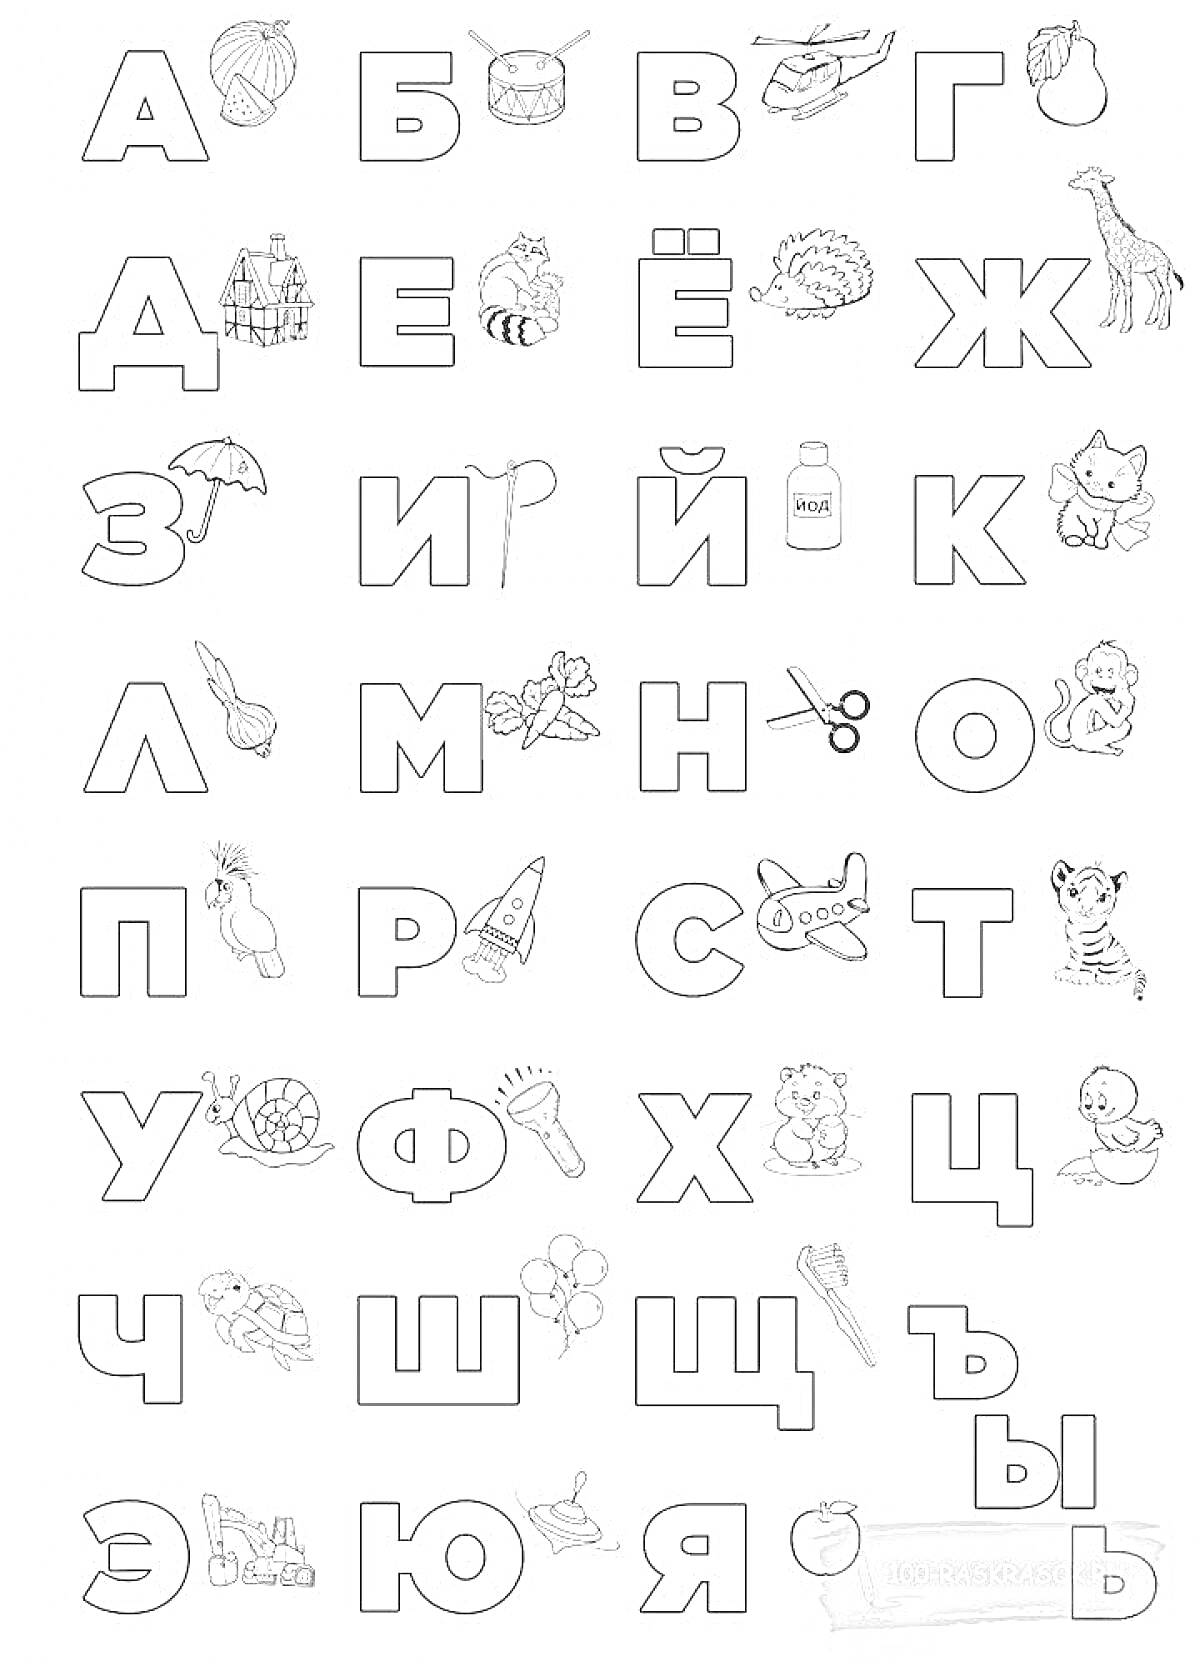 Раскраска Алфавит с изображениями животных, предметов и символов для каждой буквы